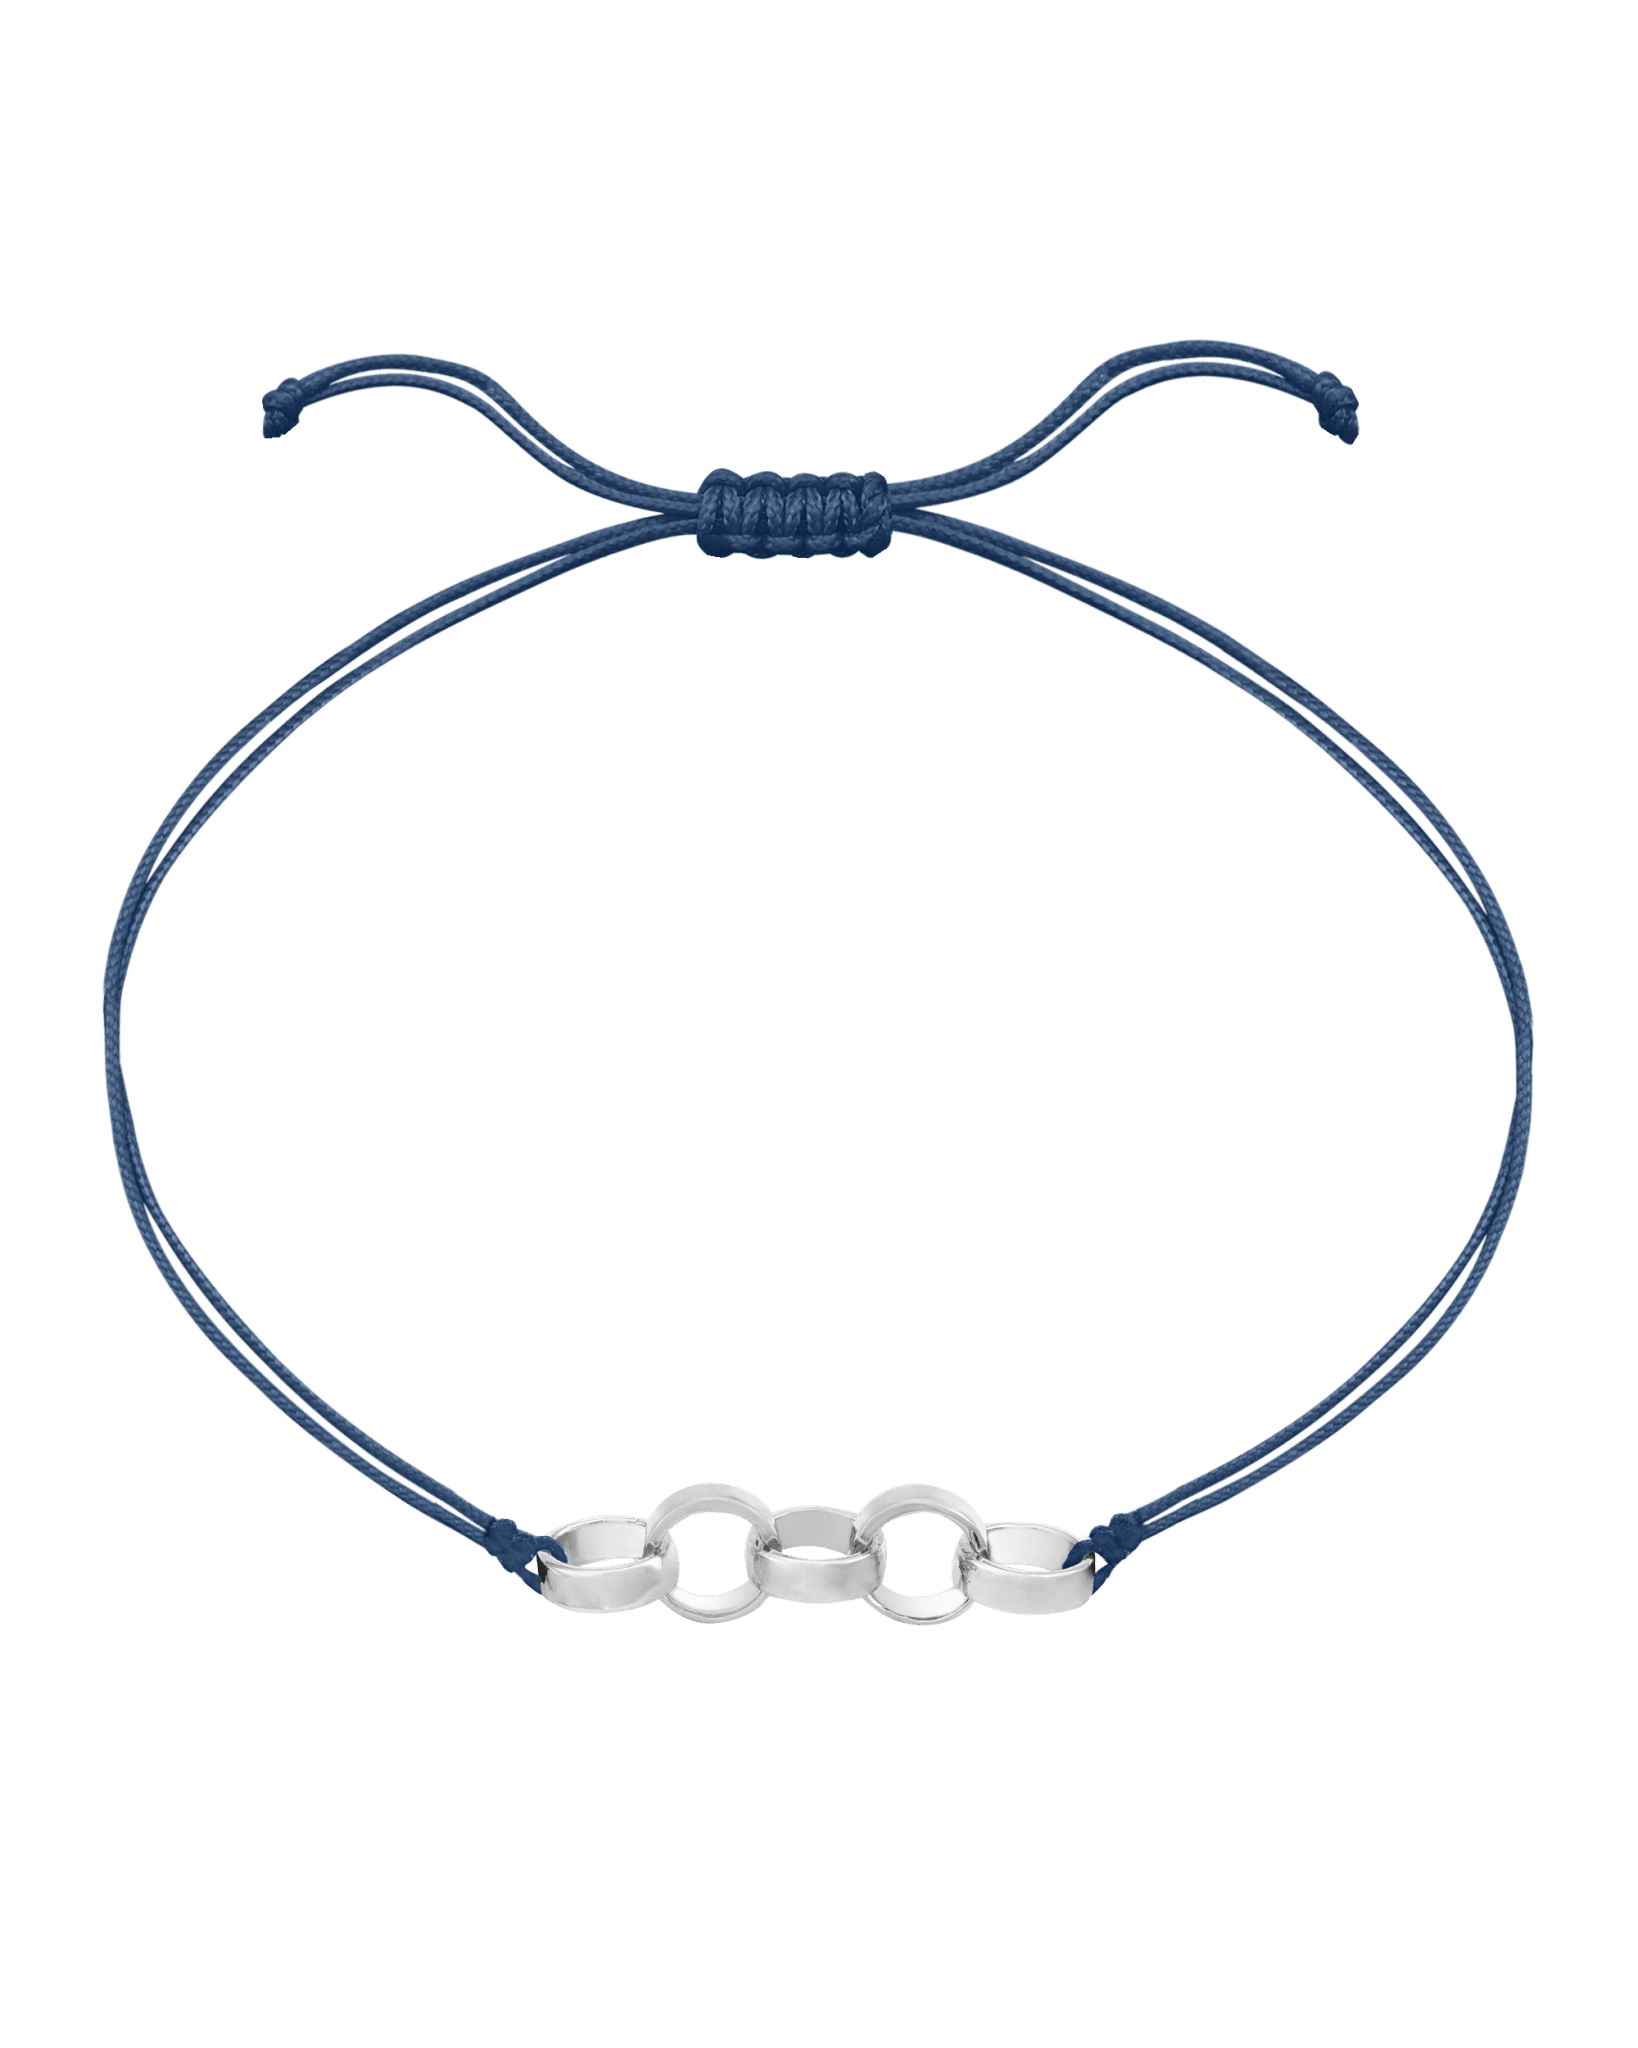 Engravable Links of Love - 925 Sterling Silver Bracelets magal-dev 5 Indigo 